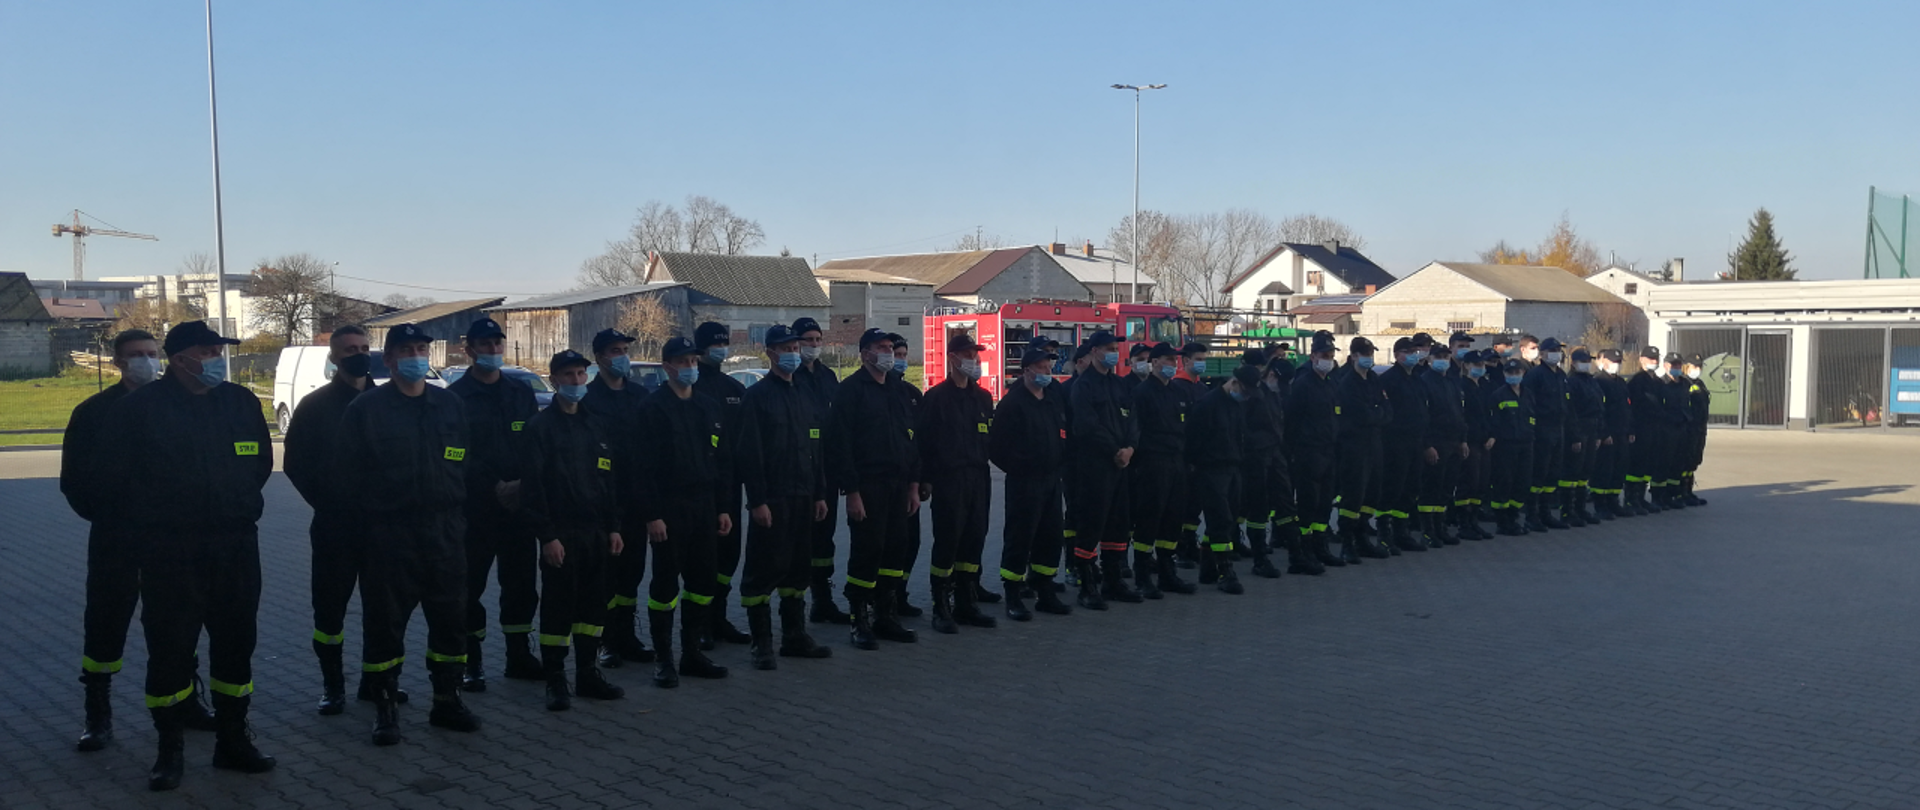 Zakończenie szkolenia podstawowego strażaków ratowników OSP - zbiórka